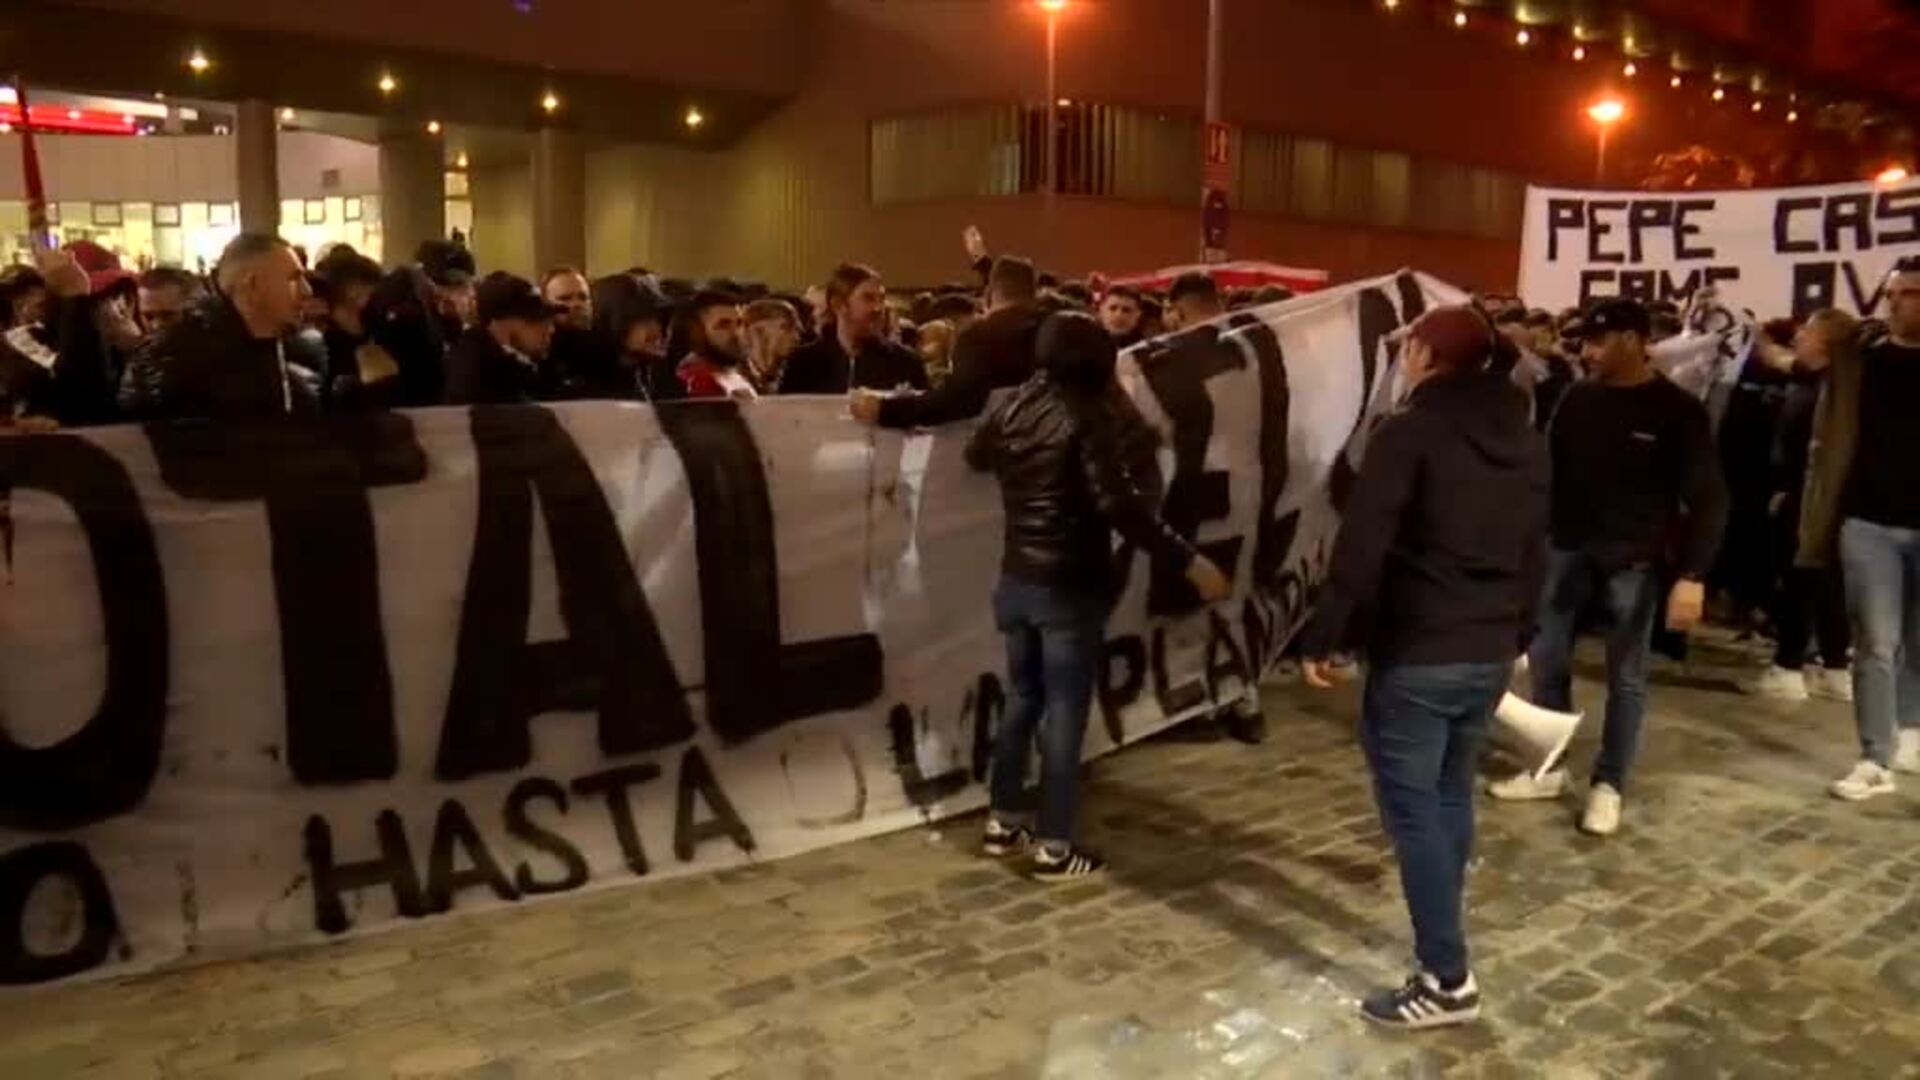 Hinchas sevillistas protestan por la gestión del club bajo el lema "Pepe Castro, Game Over"